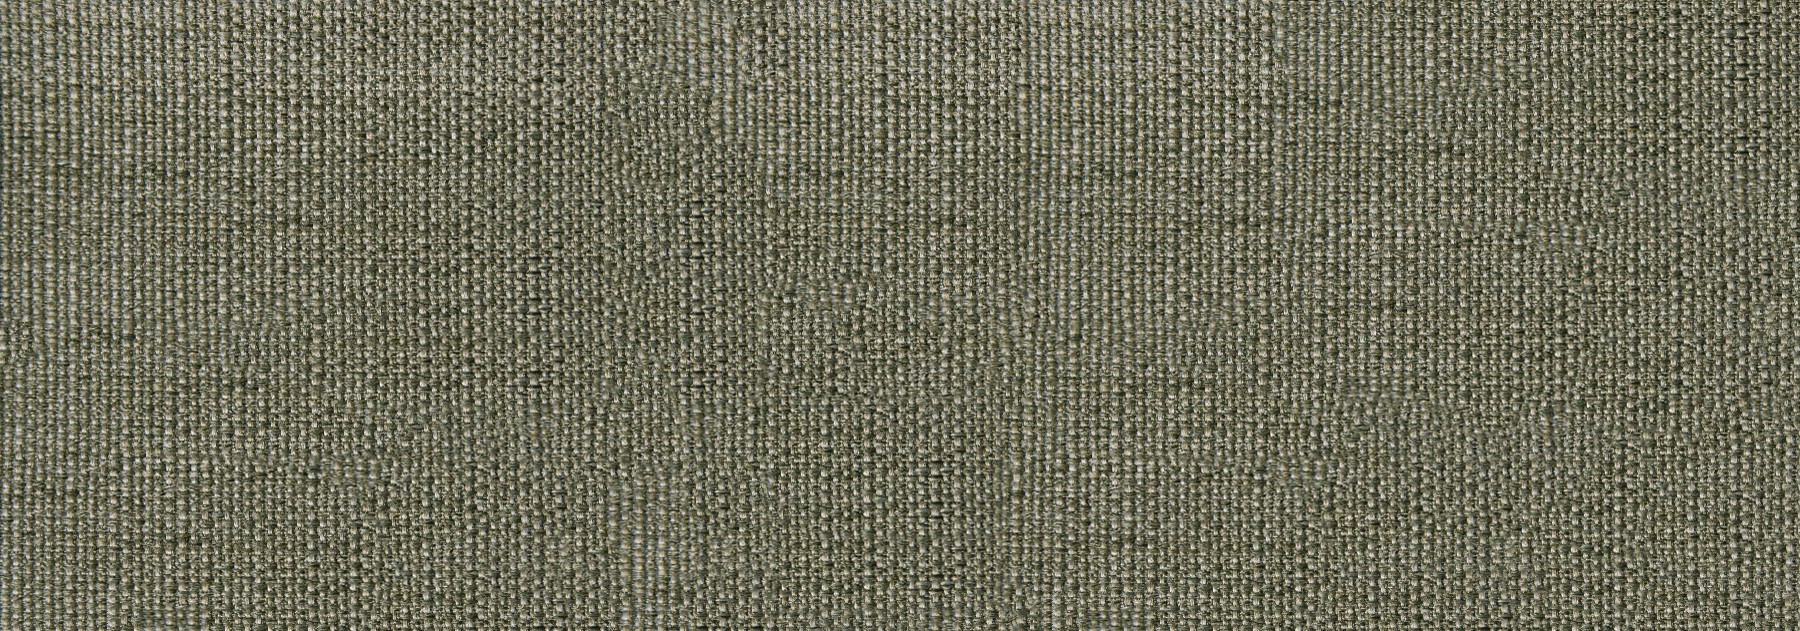 Мебельная ткань цвет оливковый